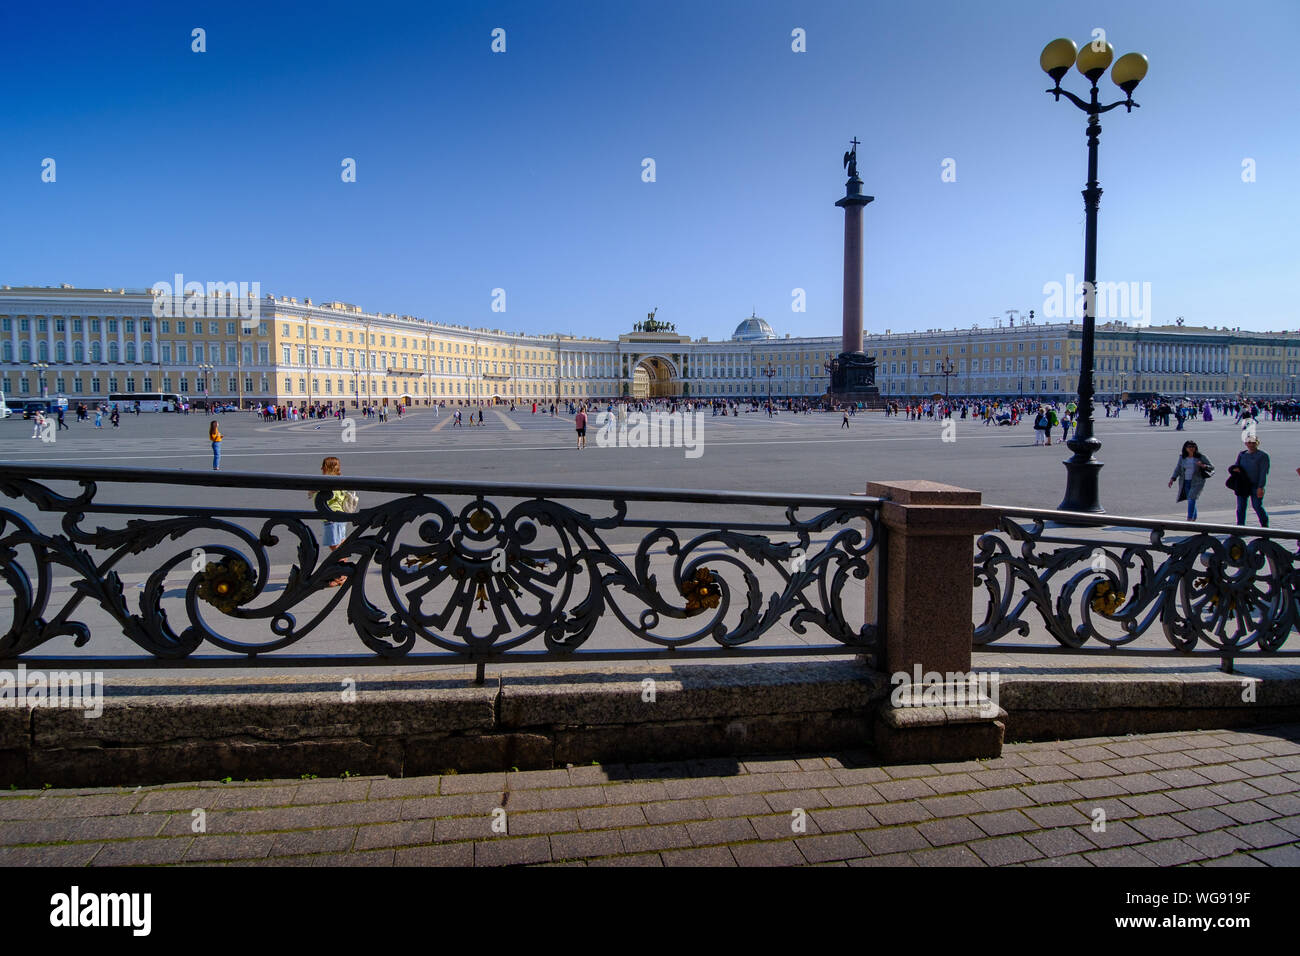 ST. PETERSBURG, Russia - 6 agosto 2019: Alexander colonna e la piazza del palazzo visto dalla rampa di accesso al Museo L Hermitage Foto Stock